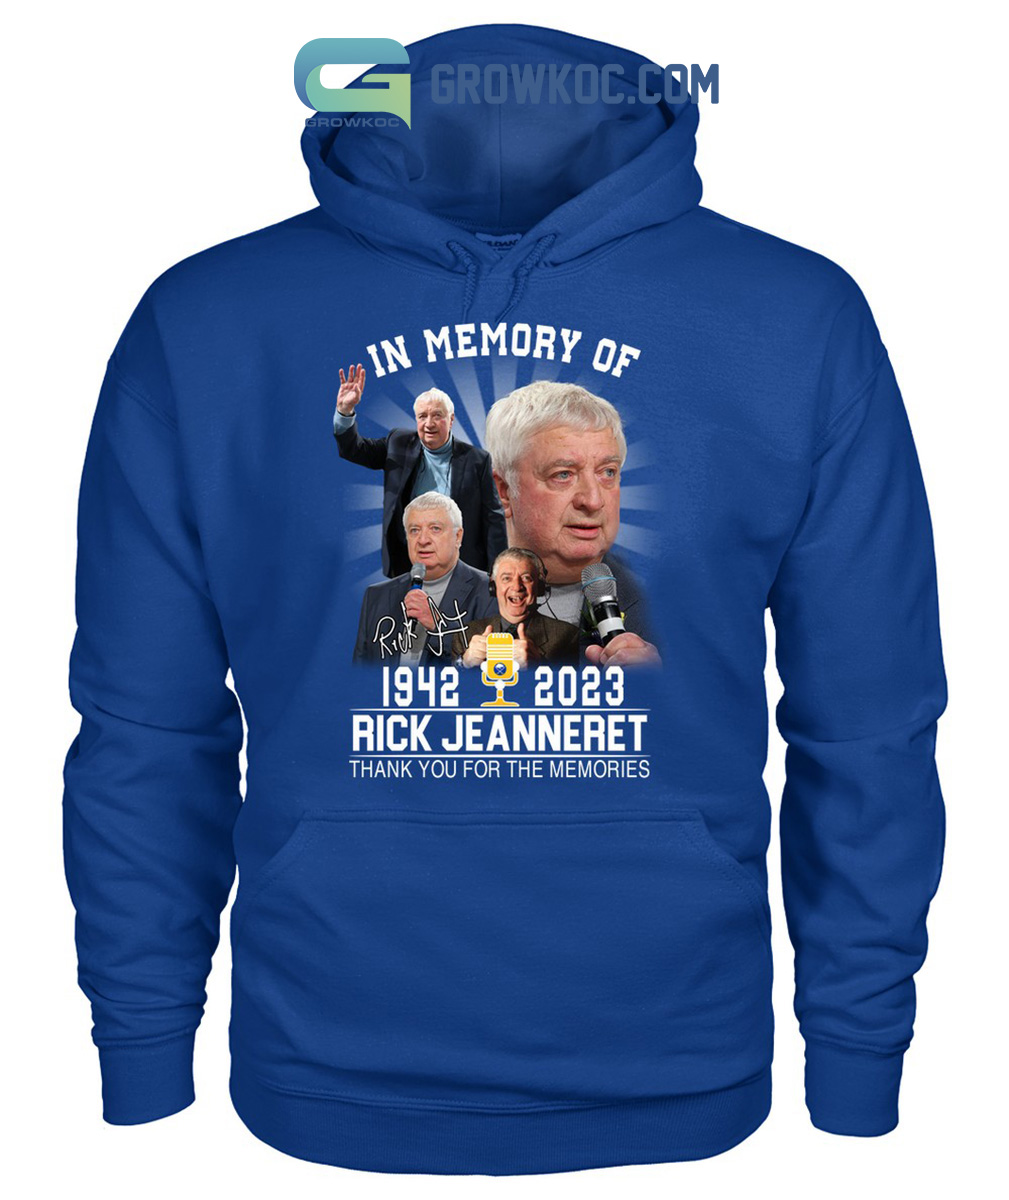 Rip Sabres Legend – Rick Jeanneret 1942-2023 Shirt